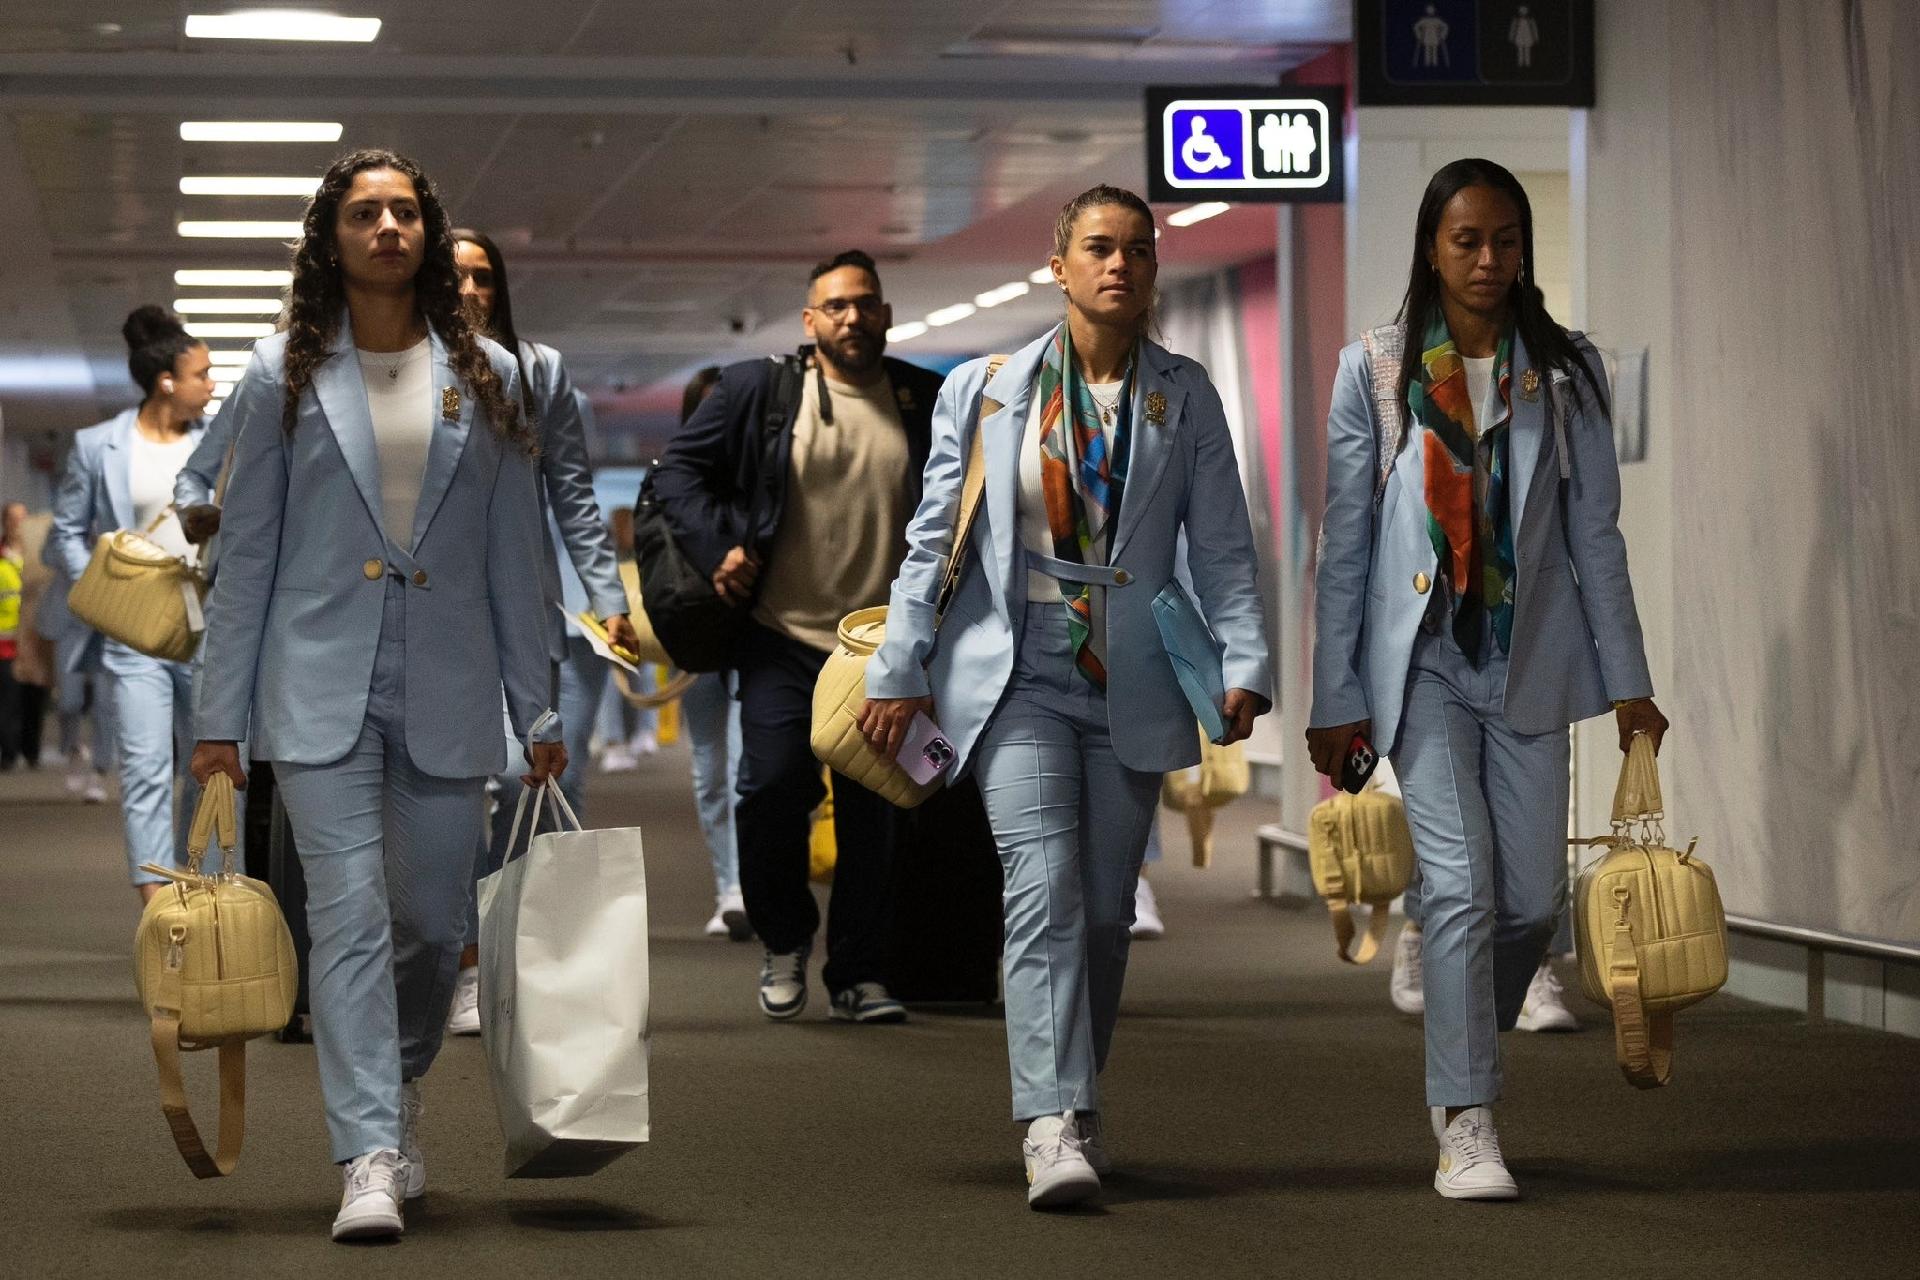 Seleção brasileira chega à Austrália para a Copa do Mundo feminina